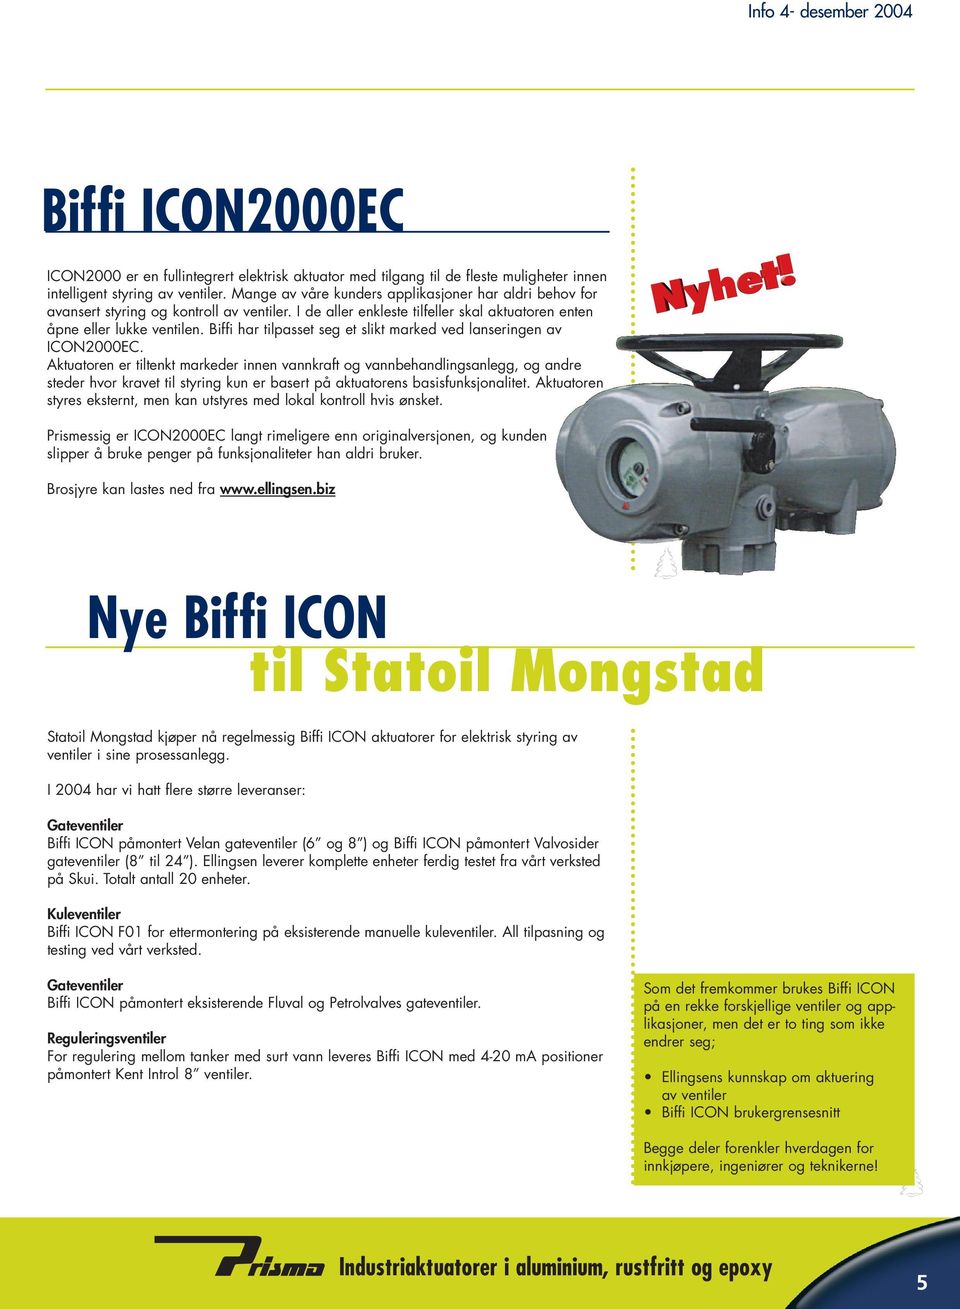 Biffi har tilpasset seg et slikt marked ved lanseringen av ICON2000EC.